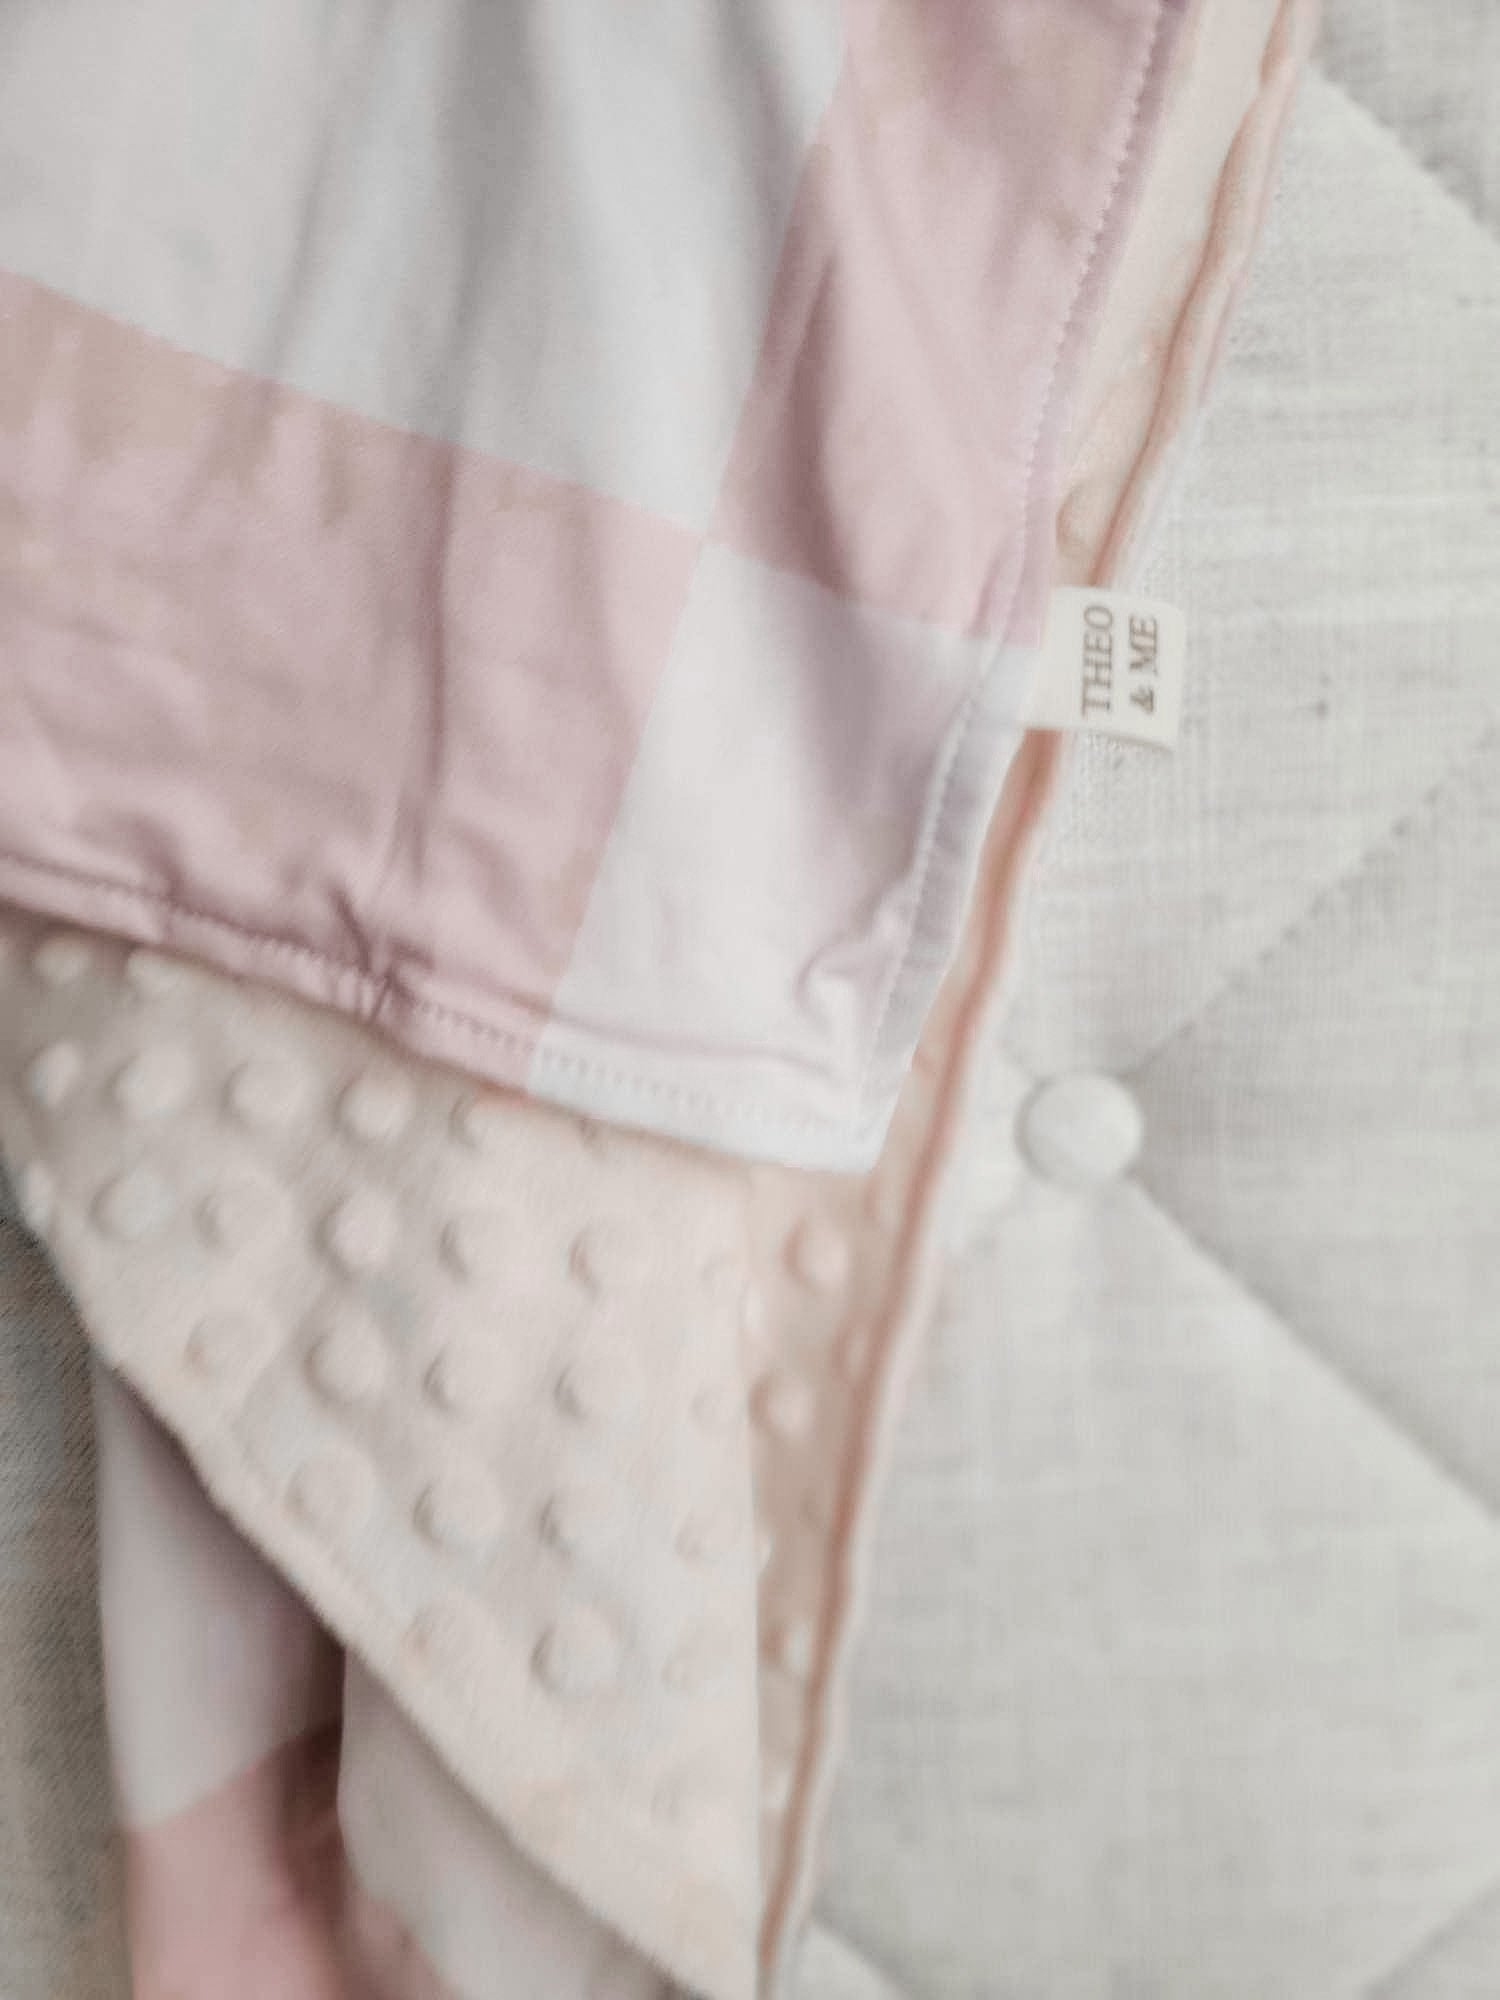 Kids Blankets Minky & Cotton Spandex - Blush/Tan Check